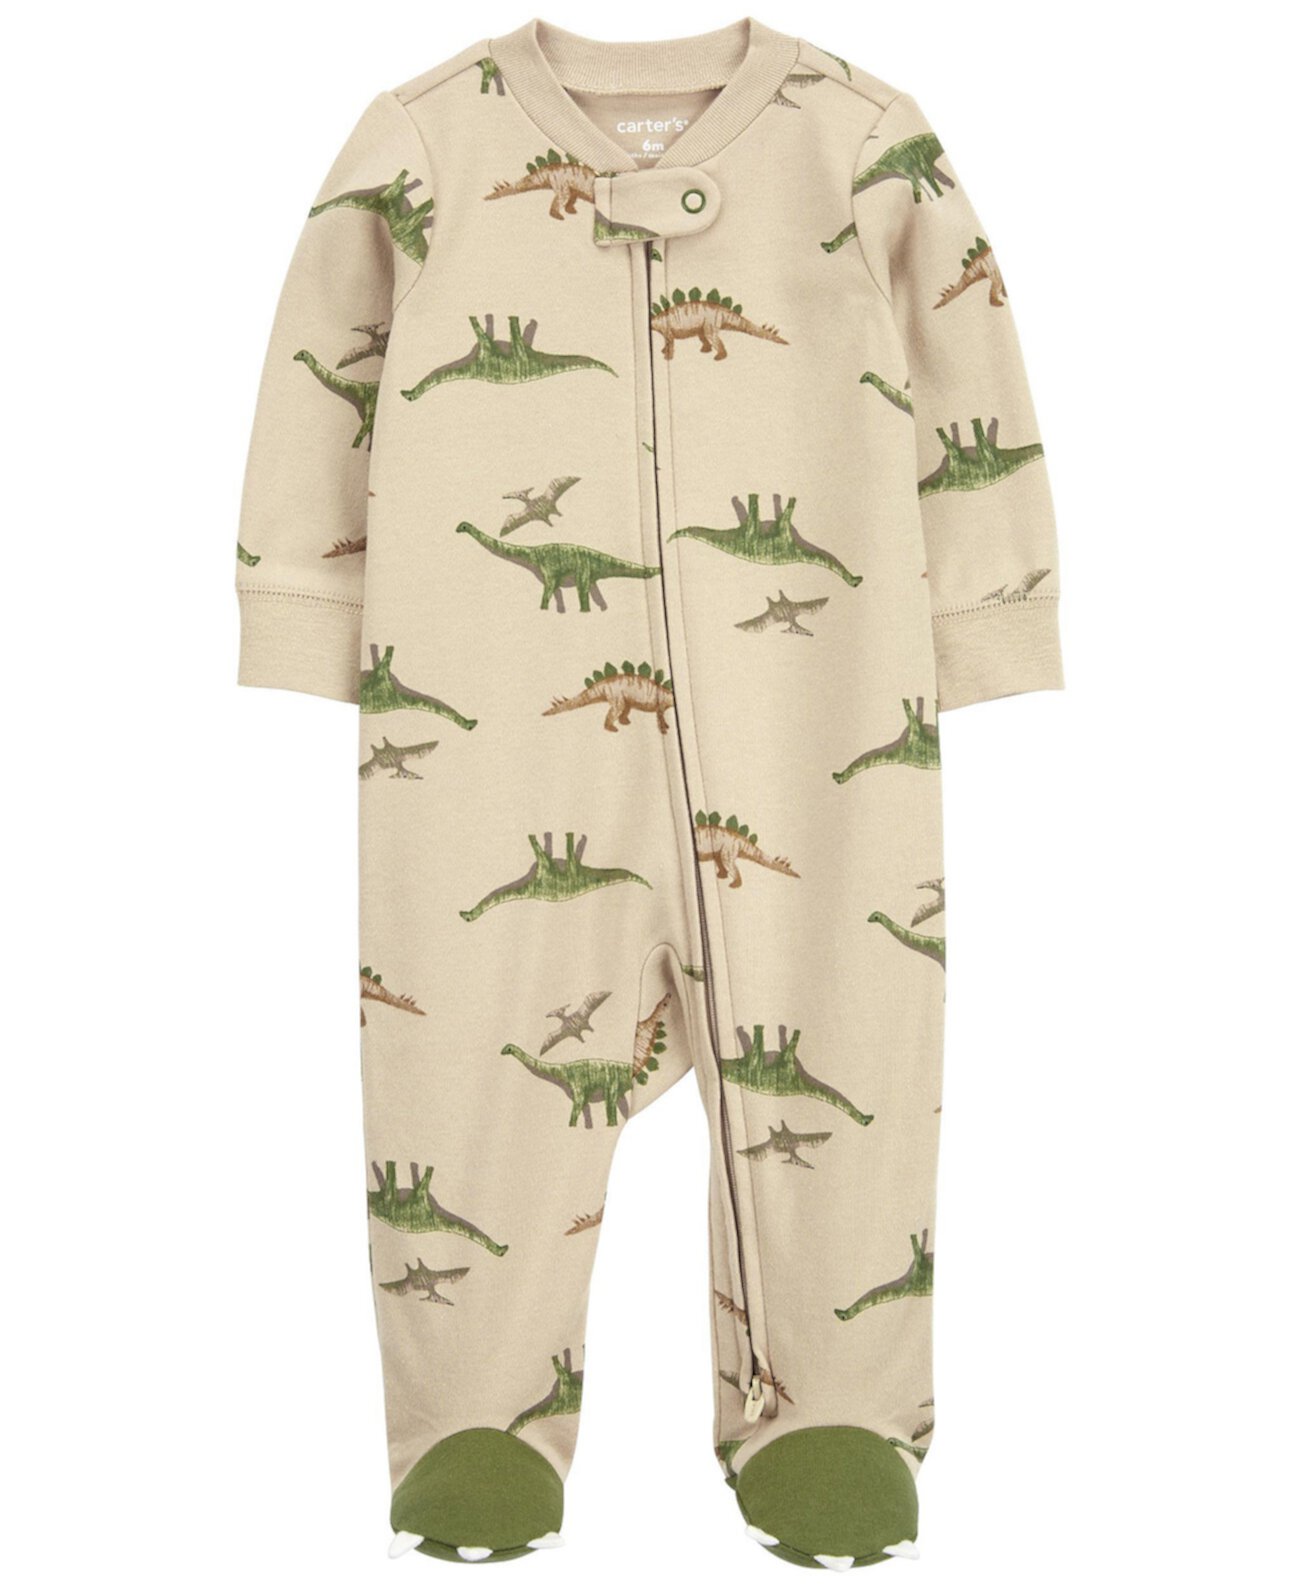 Хлопковая пижама для сна и игр с маленьким динозавром Carter's